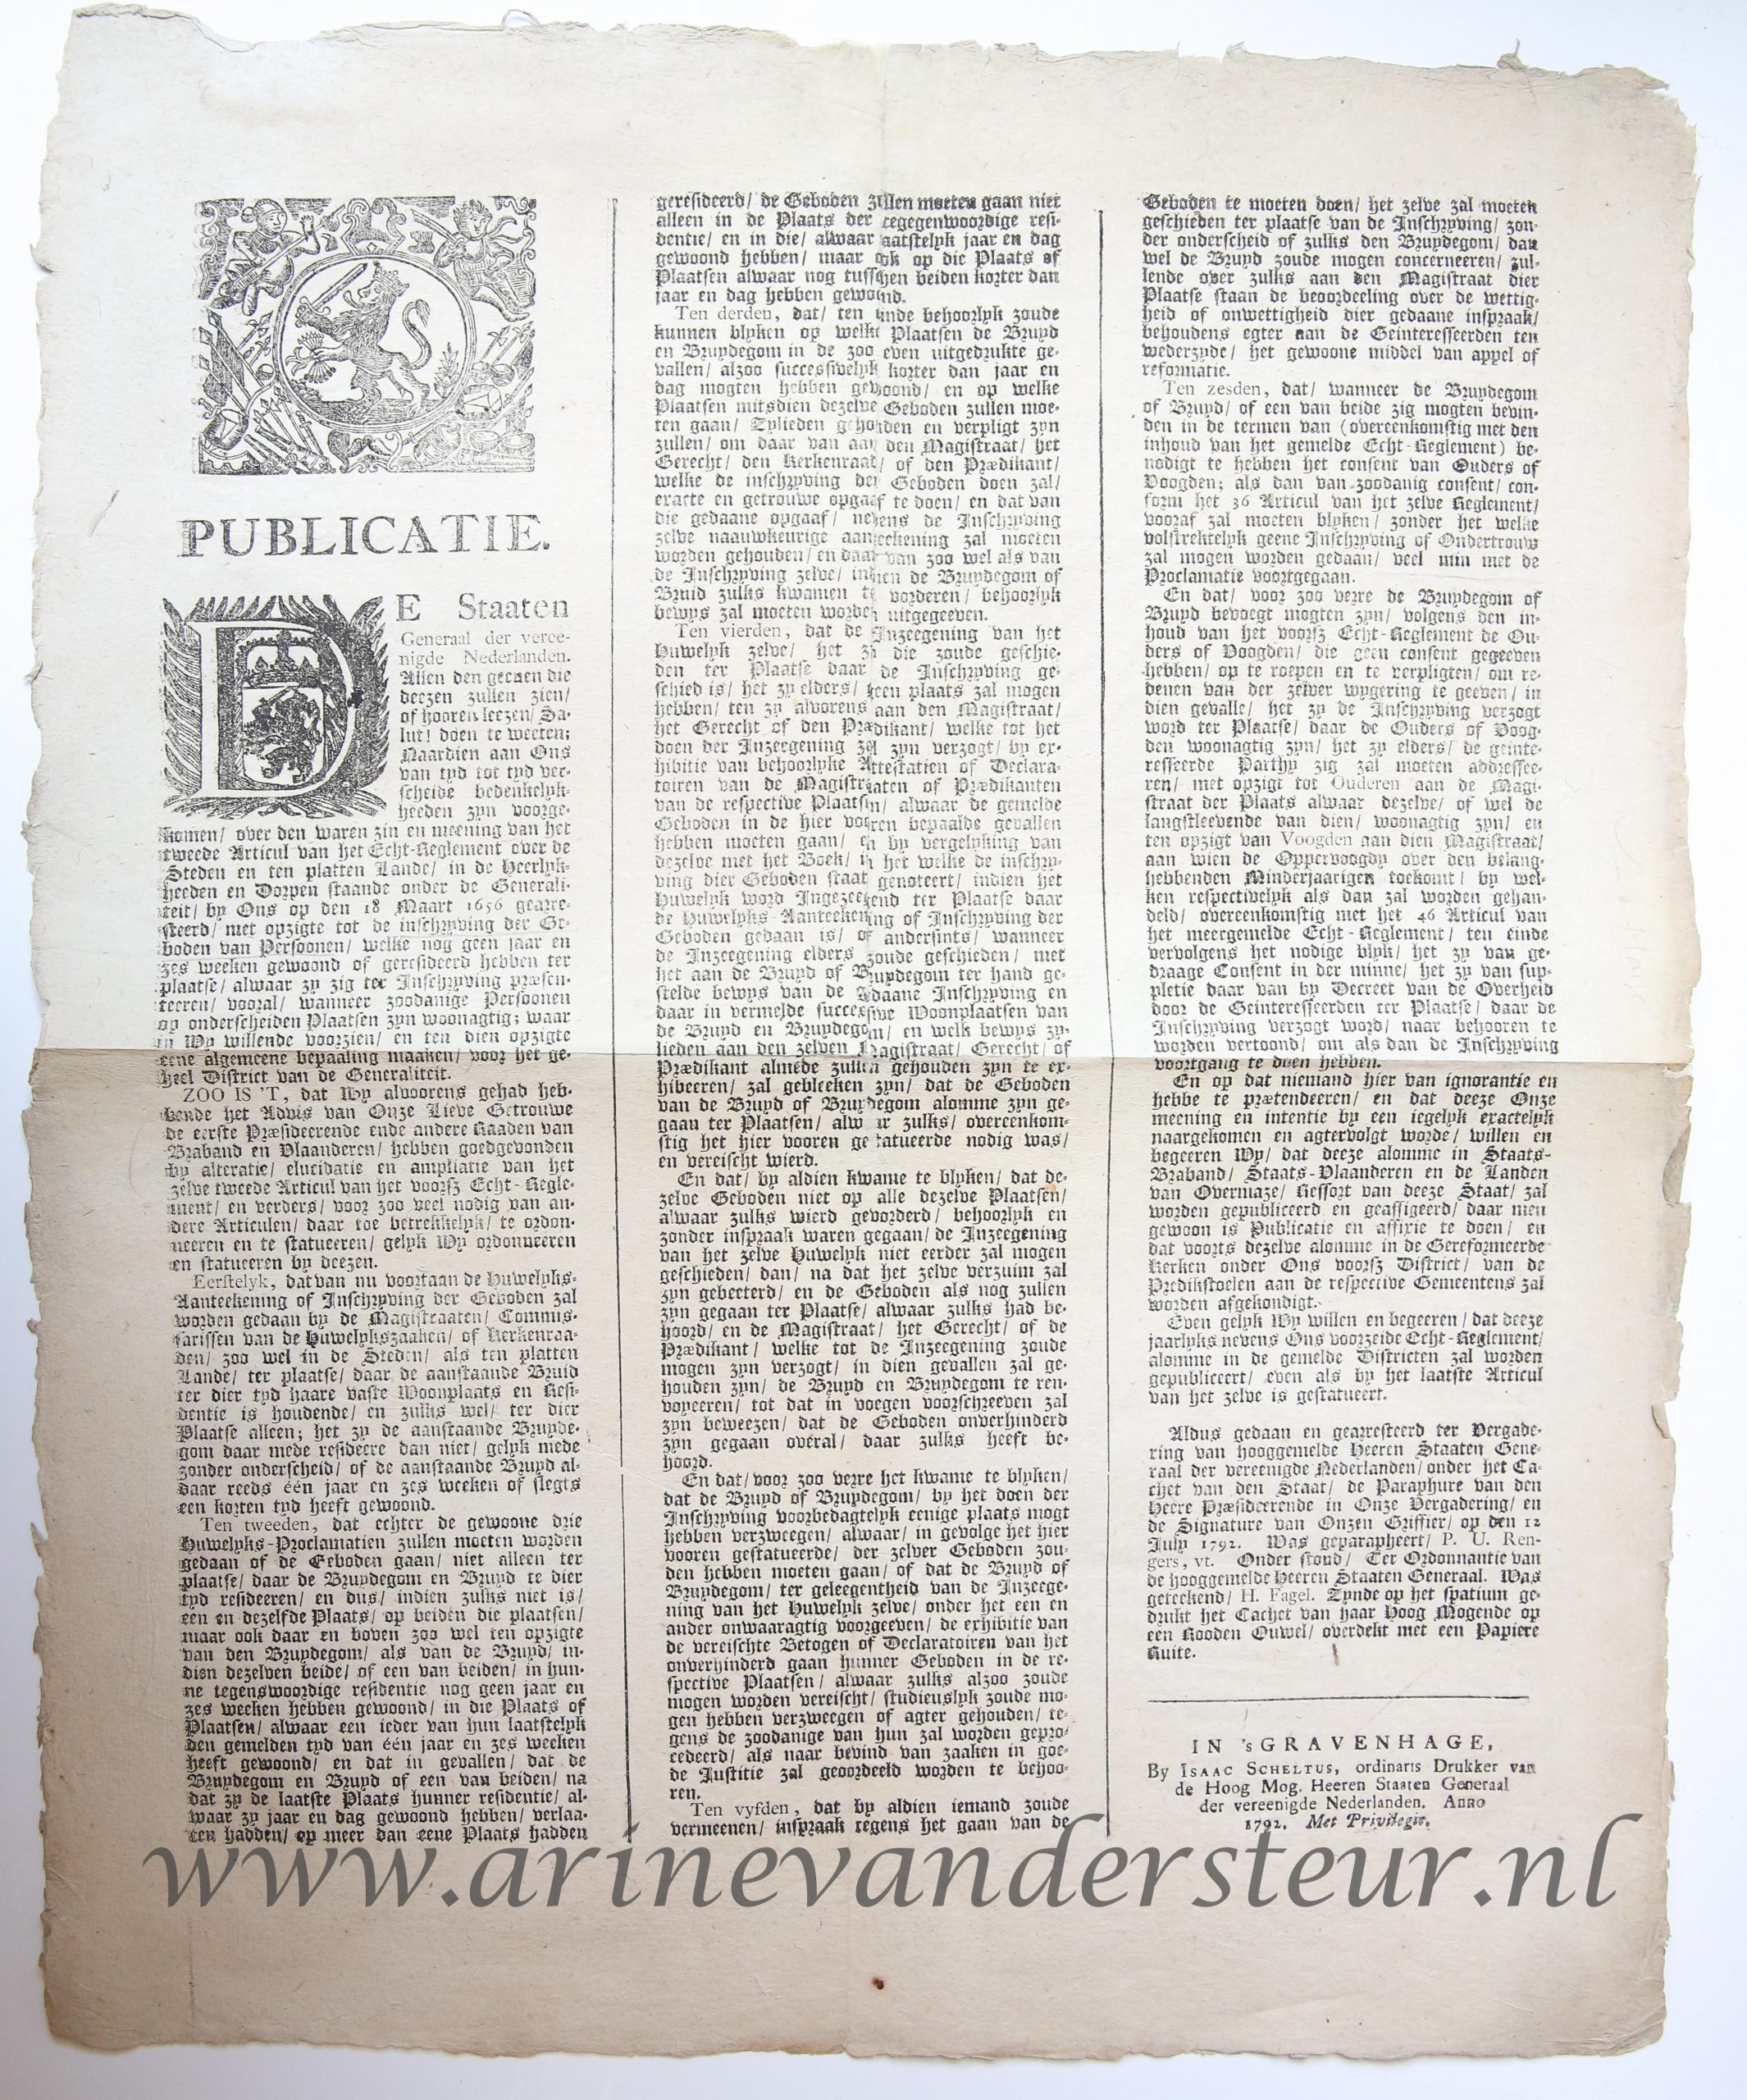 Pamphlet. Publicatie. De Staaten Generaal der vereenigde Nederlanden (...). 1 p.